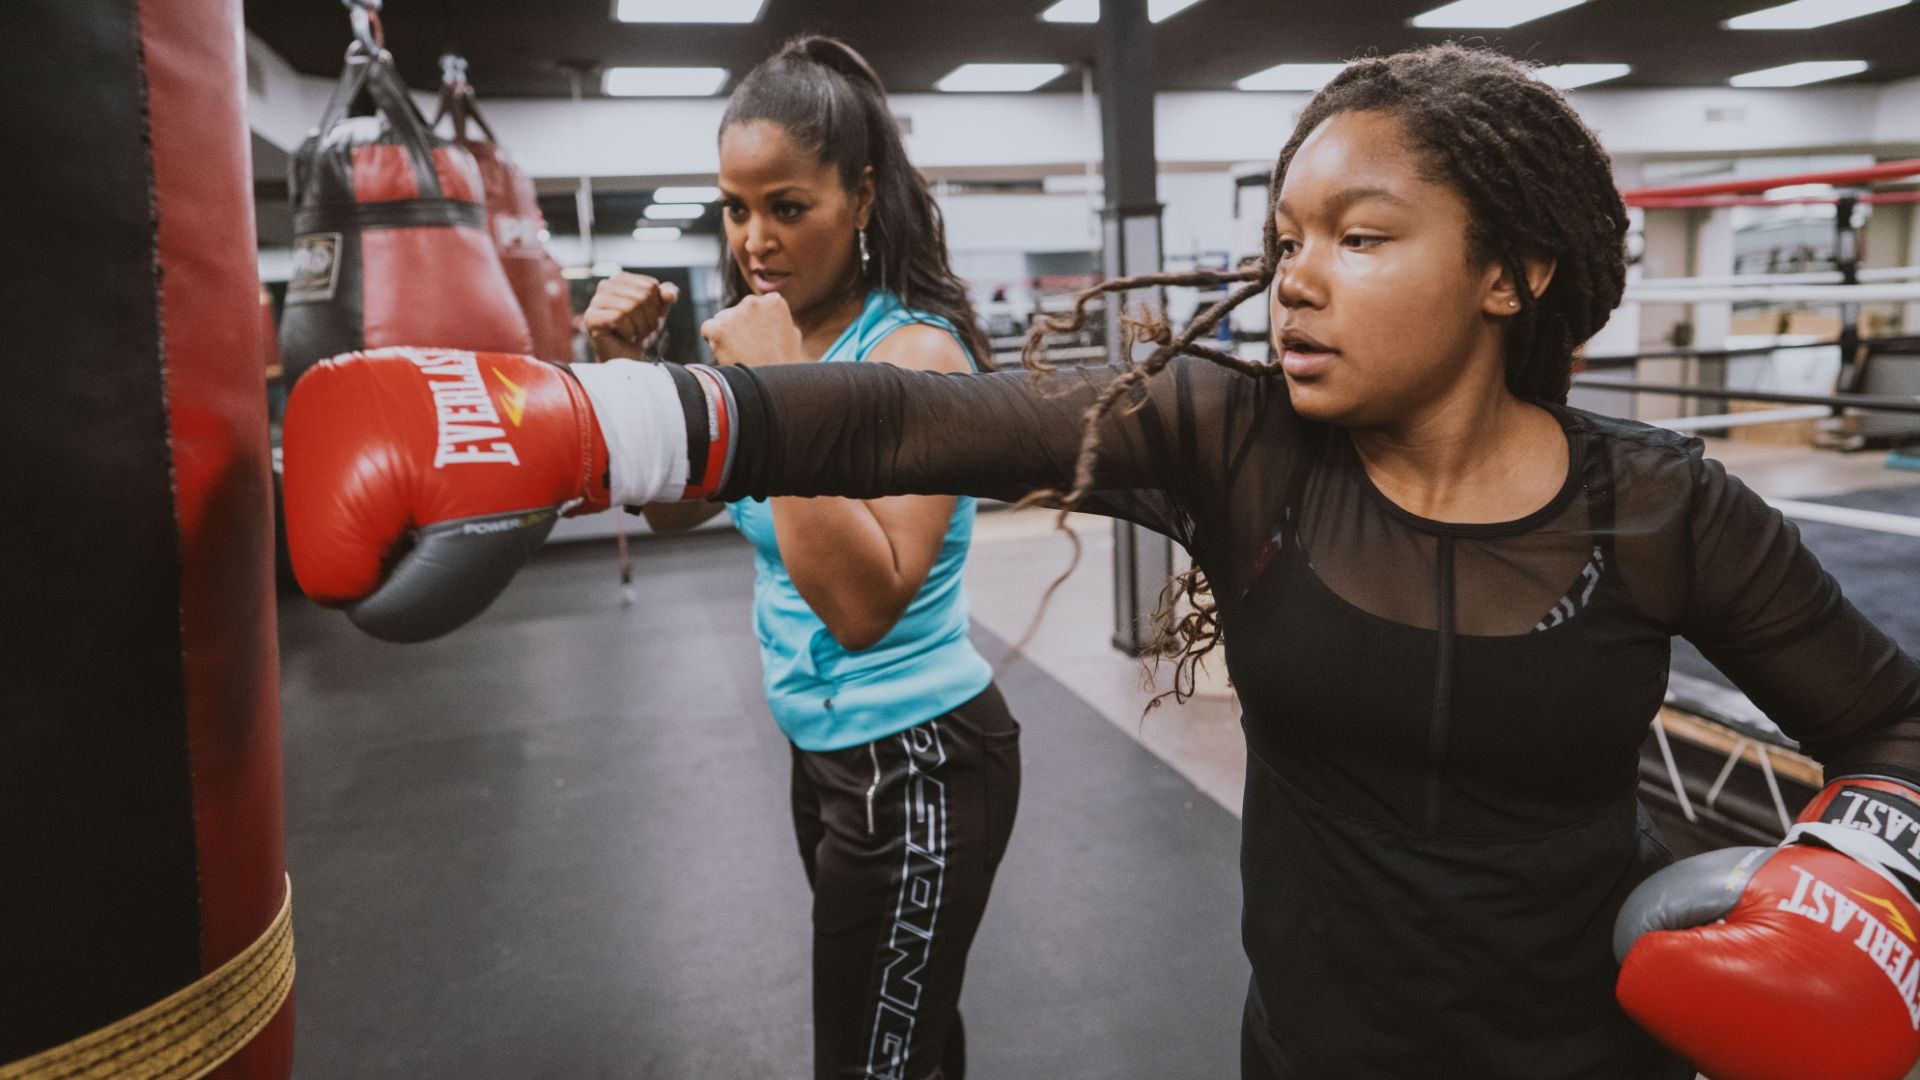 2 women boxers training on punching bag